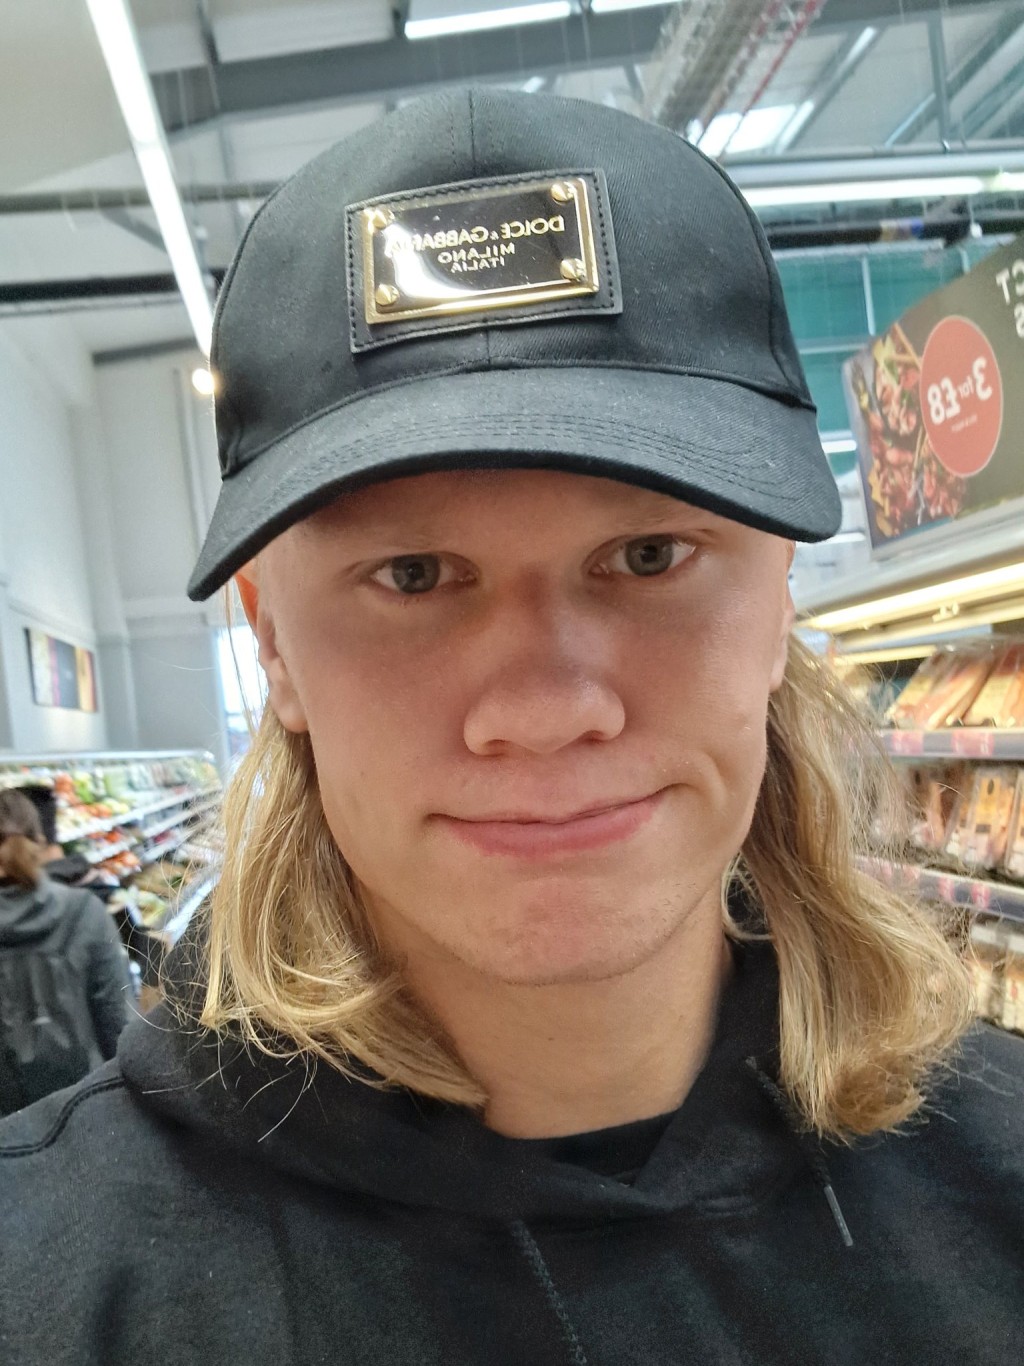 夏特兰在社交网站上载自己闲逛超级市场的照片。夏兰特Twitter图片